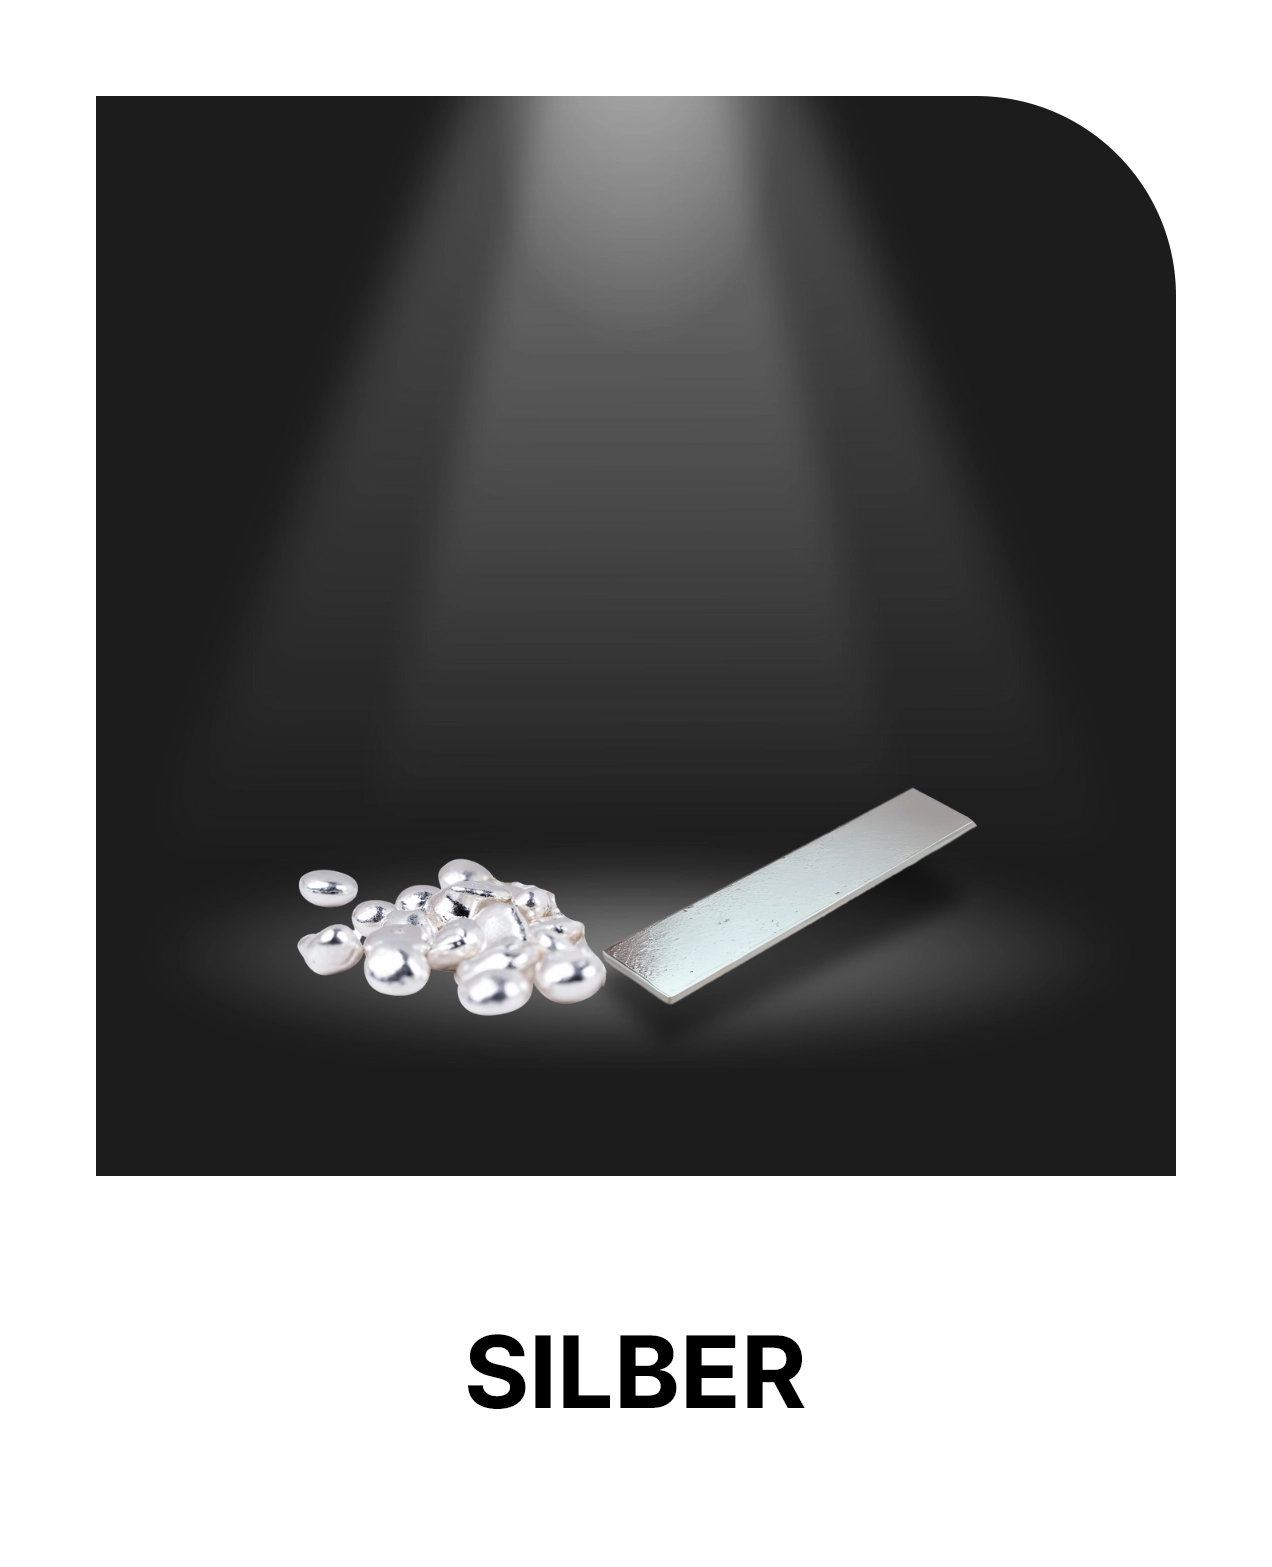 Produktpalette aus Silbergranulat, Silberplatten mit 99,99% Reinheit, Silbercyanid in Pulverform mit 80,5% Silbergehalt und Kaliumsilbercyanid in Pulverform mit 54,2% Silbergehalt.